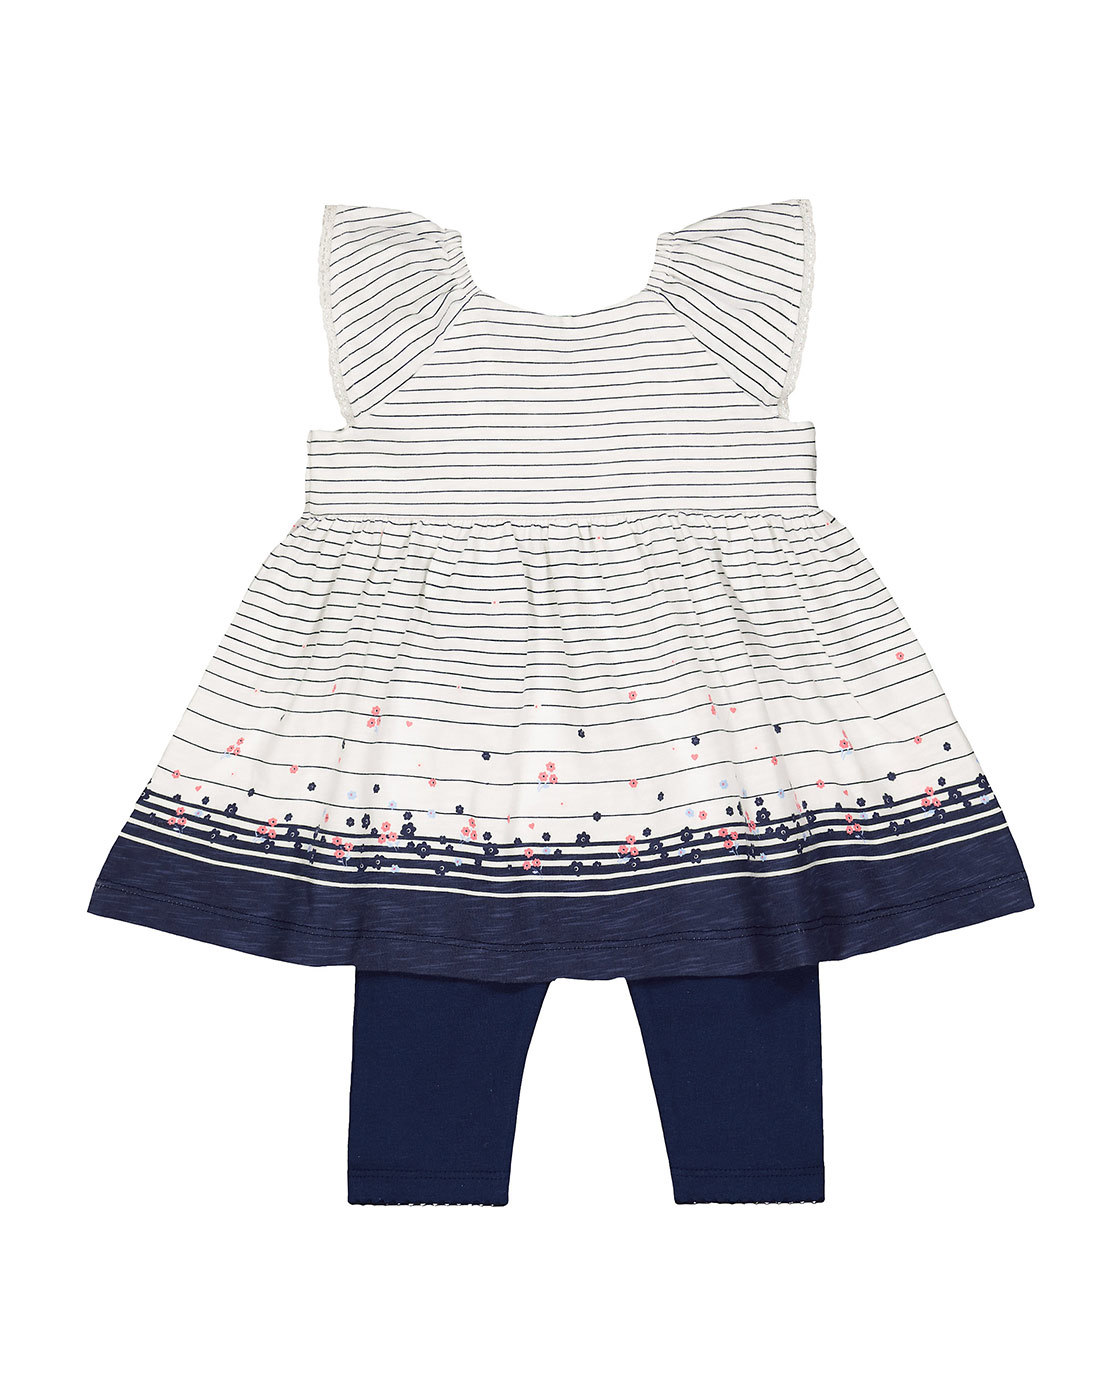 Buy Peppermint White & Black Dress With Leggings for Infant Girls Clothing  Online @ Tata CLiQ